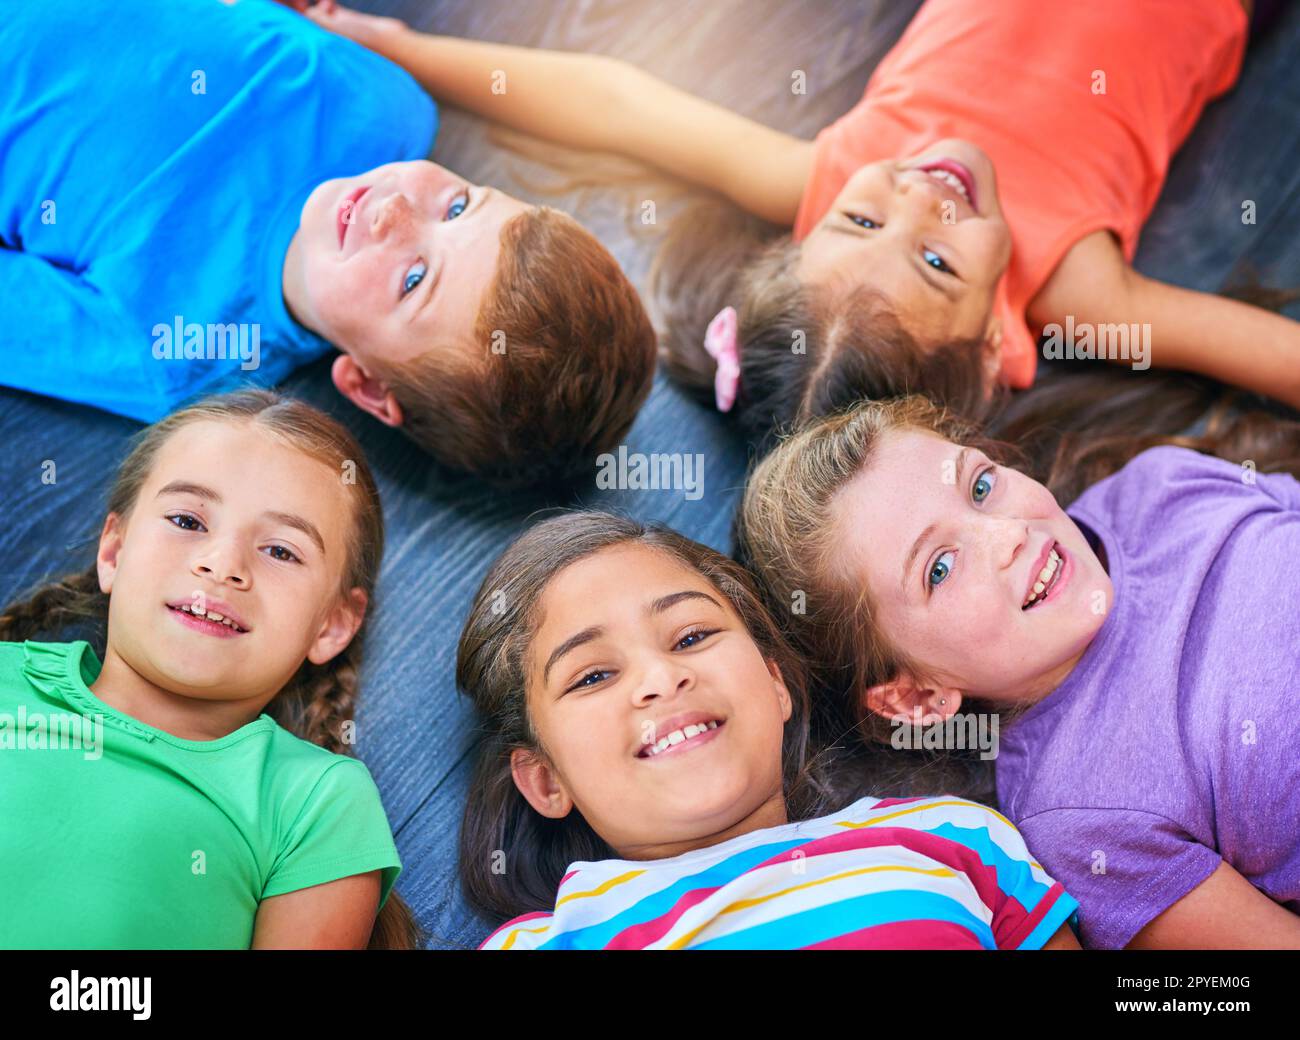 Gli amici sono le cose più belle che si possono avere. un gruppo diversificato di bambini che si trovano insieme sul pavimento. Foto Stock